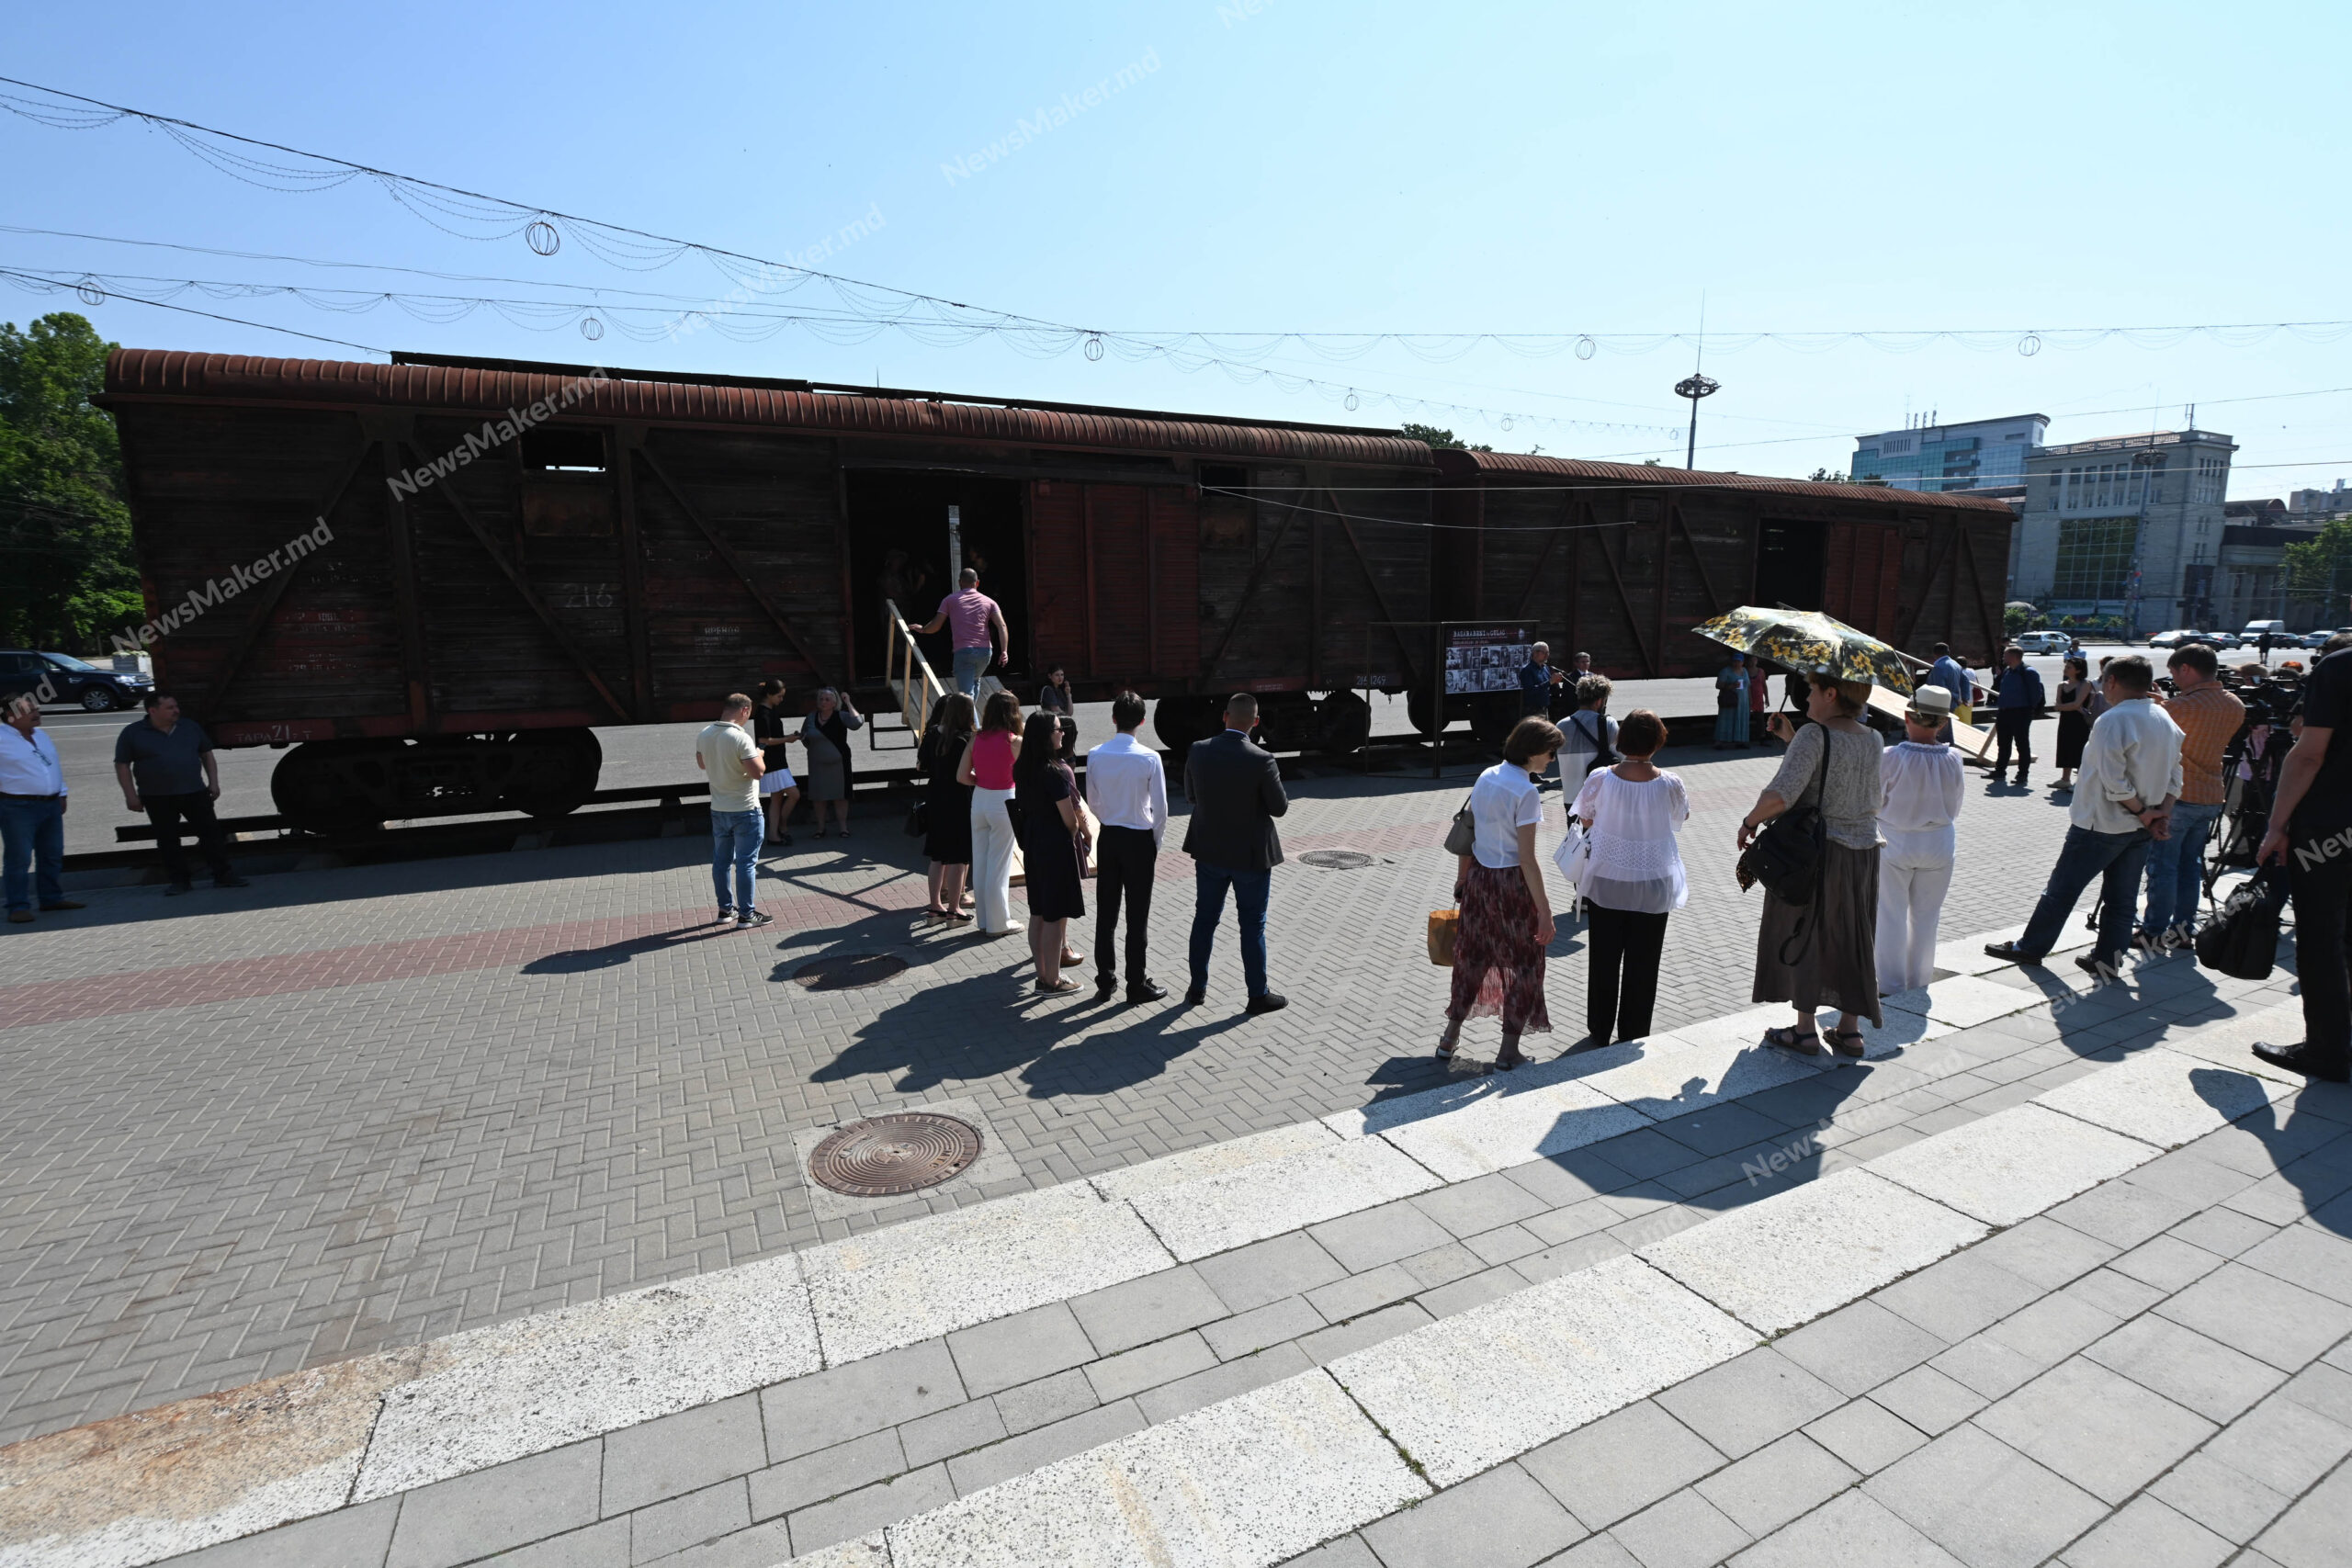 (ФОТО) В Кишиневе проходит выставка, посвященная жертвам депортаций. В центре города установили два вагона